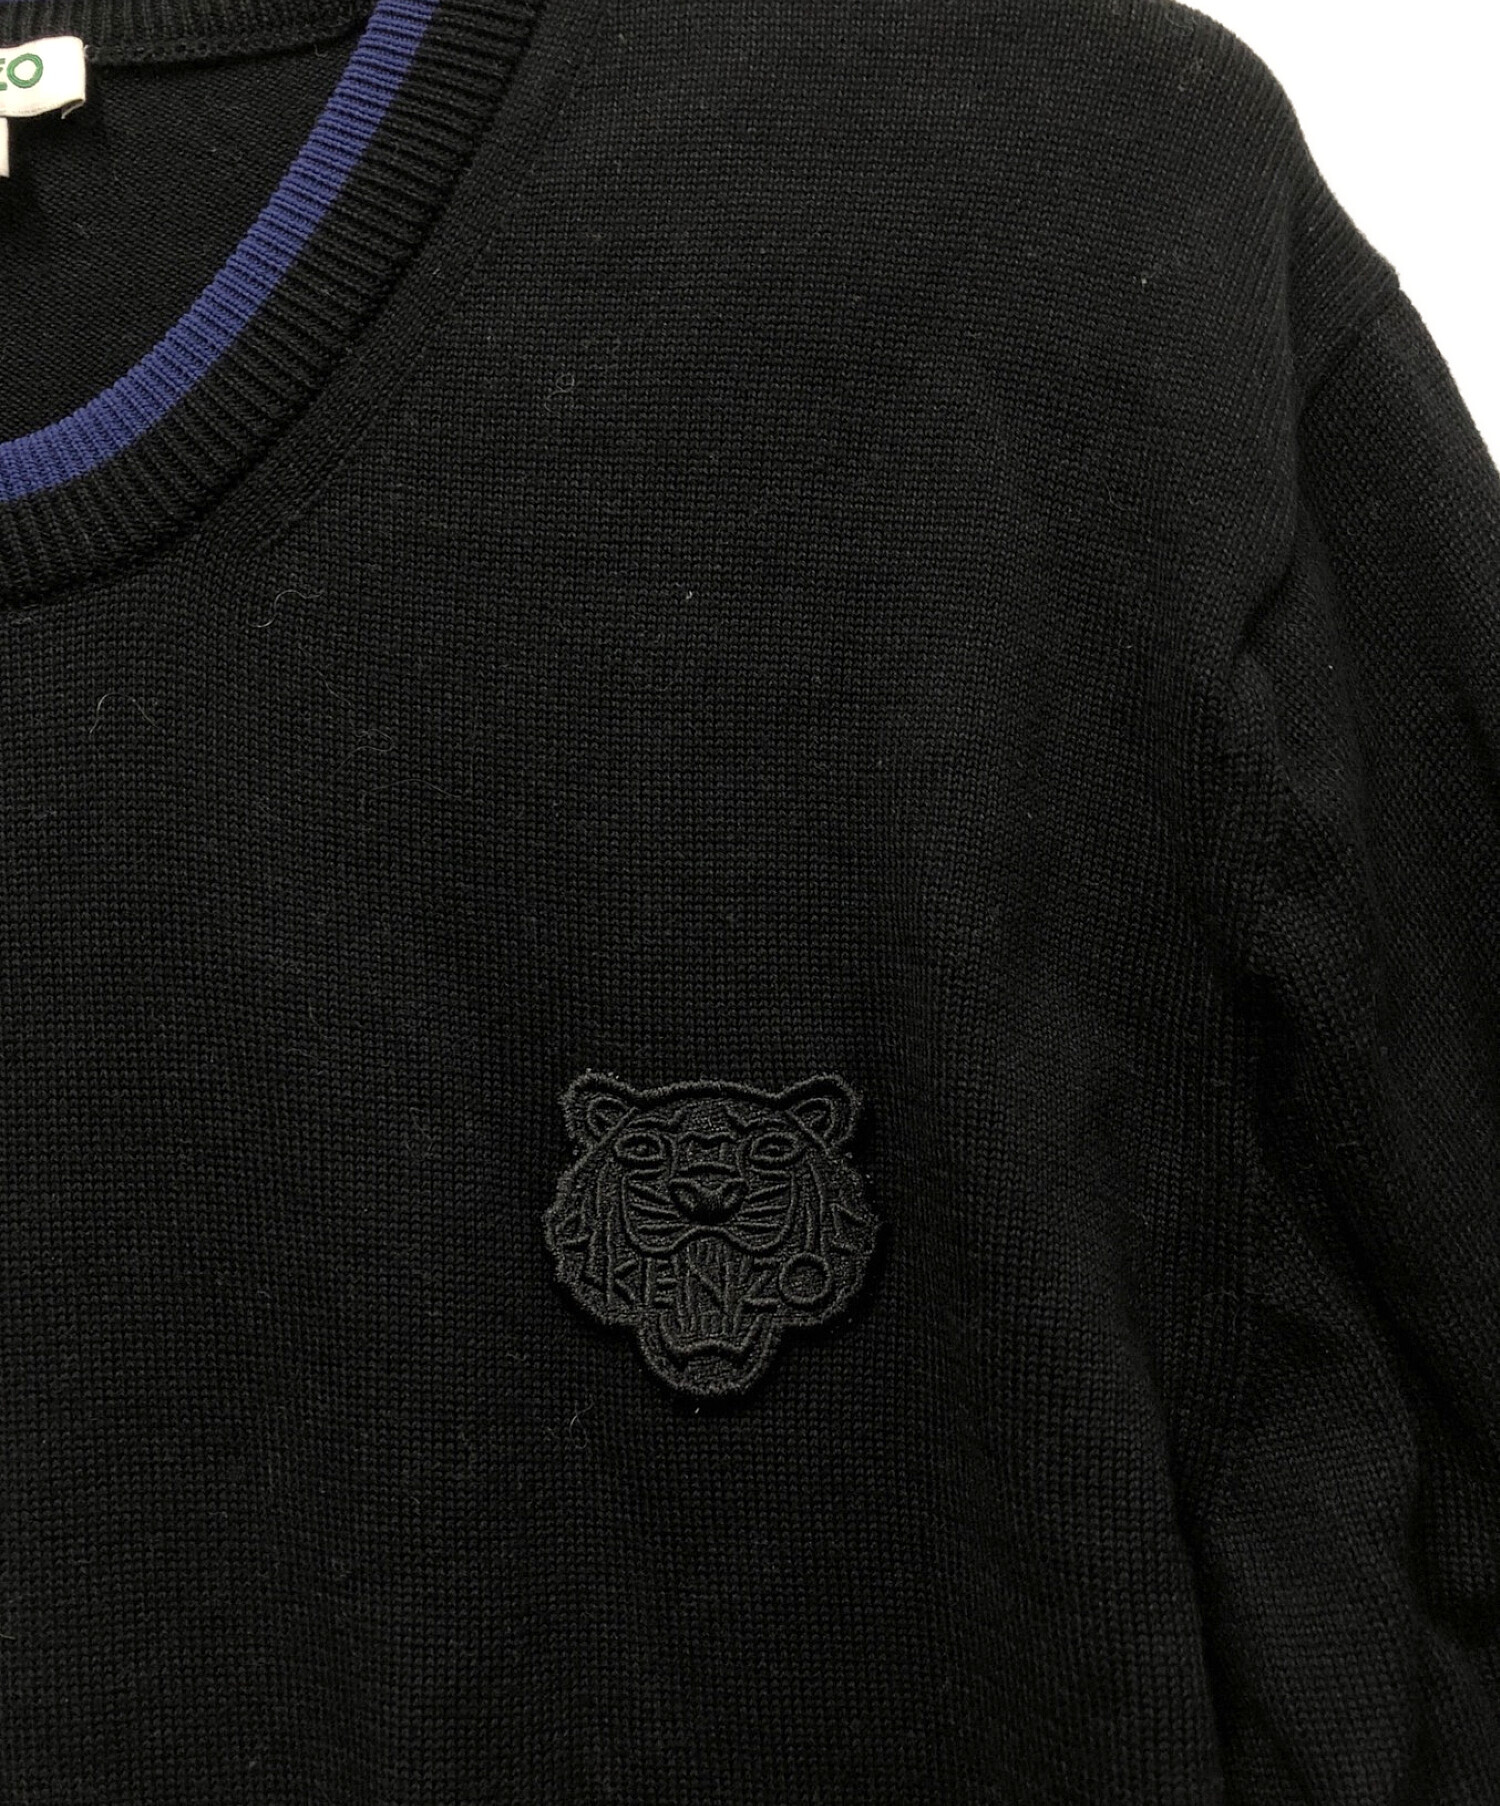 KENZO (ケンゾー) ニットセーター ブラック サイズ:L